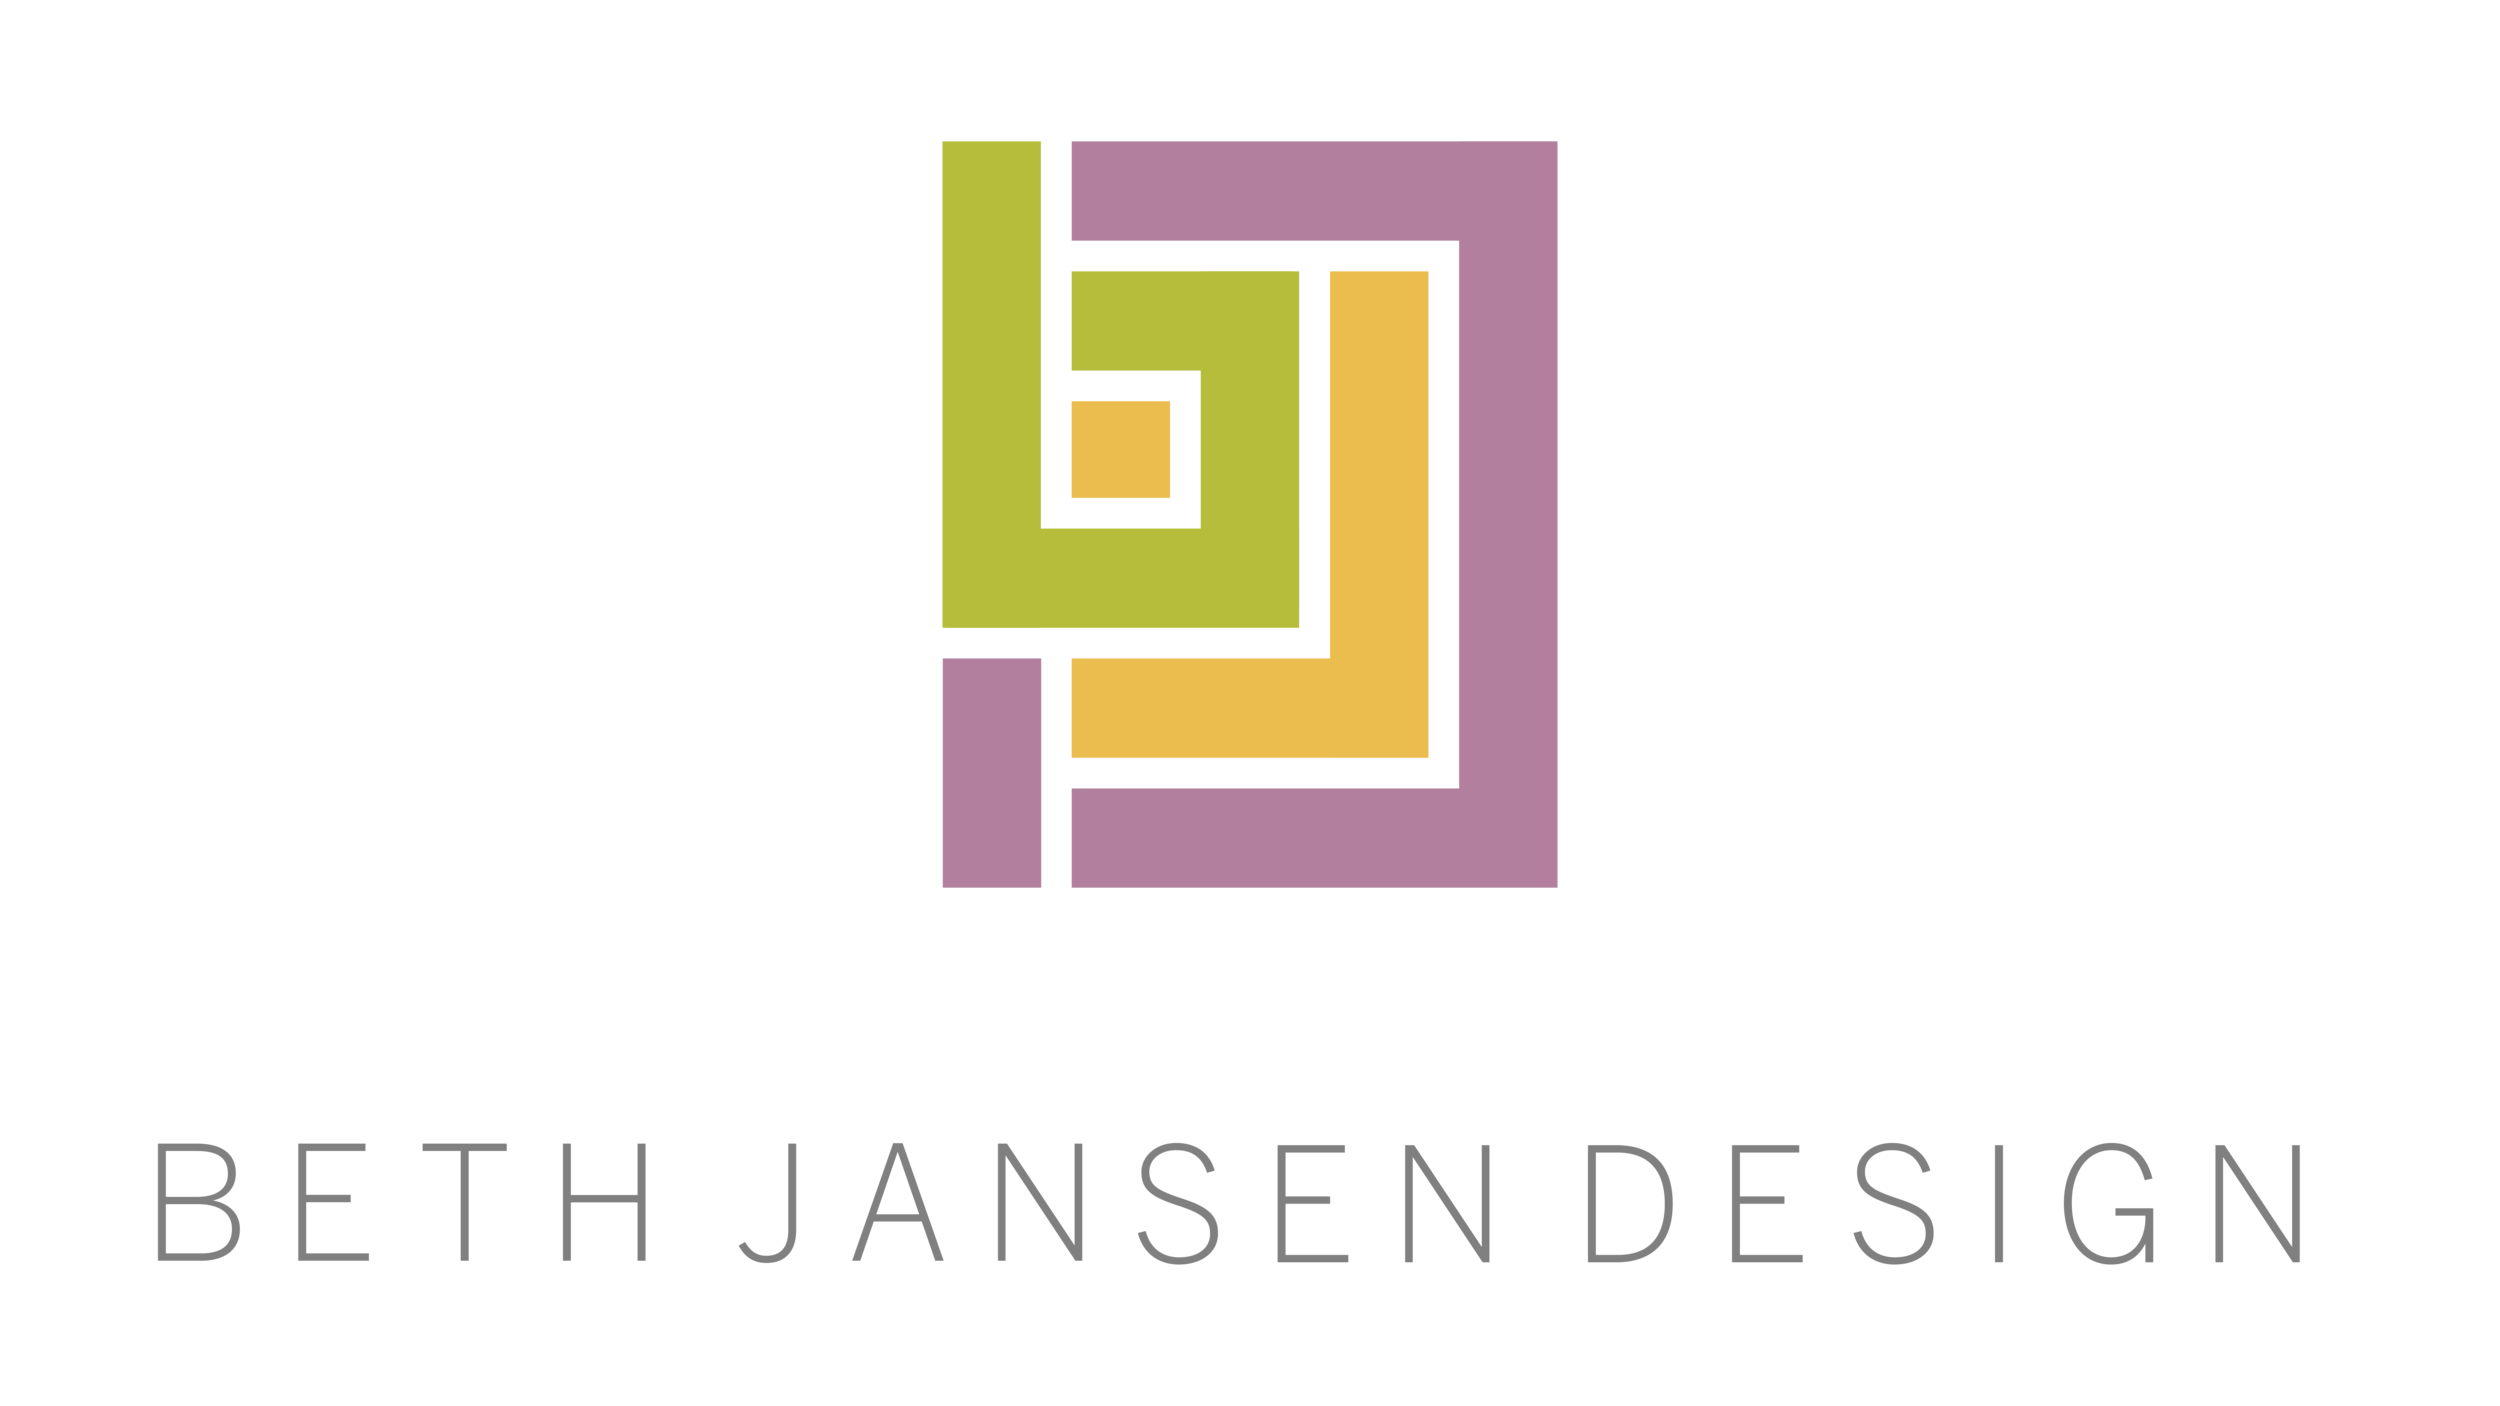 Beth Jansen Design